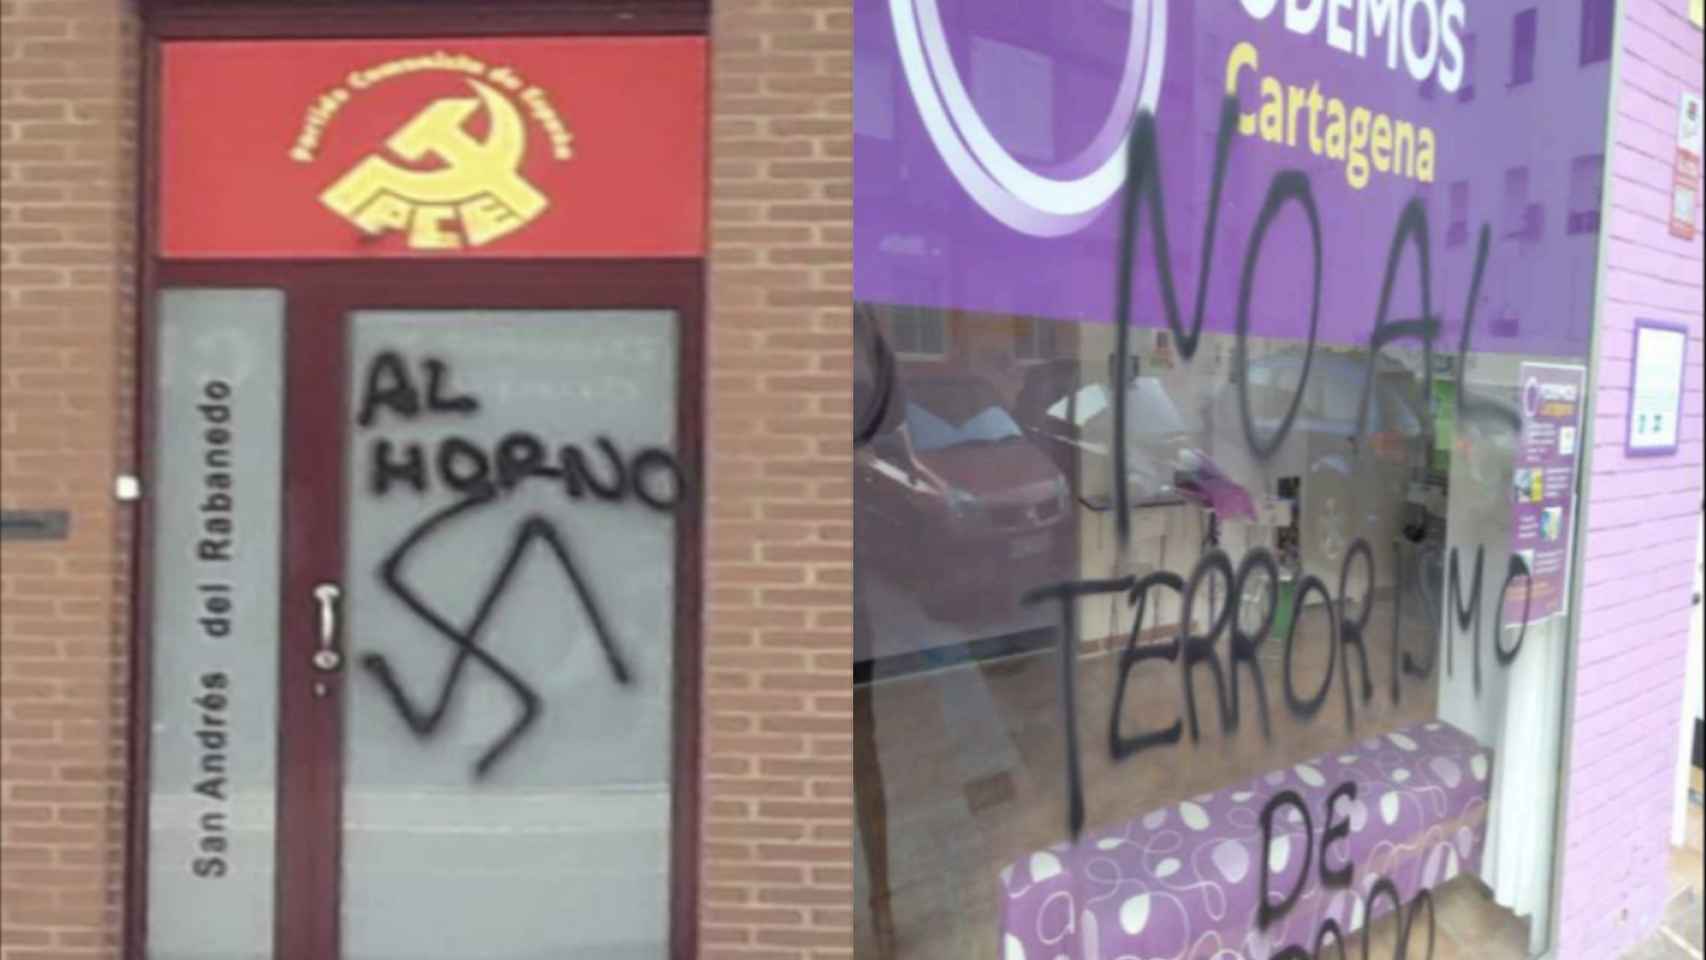 Los grafitis de la sede de IU en un pueblo de León y los del local de Podemos en Cartagena que analizó la Policía Nacional.